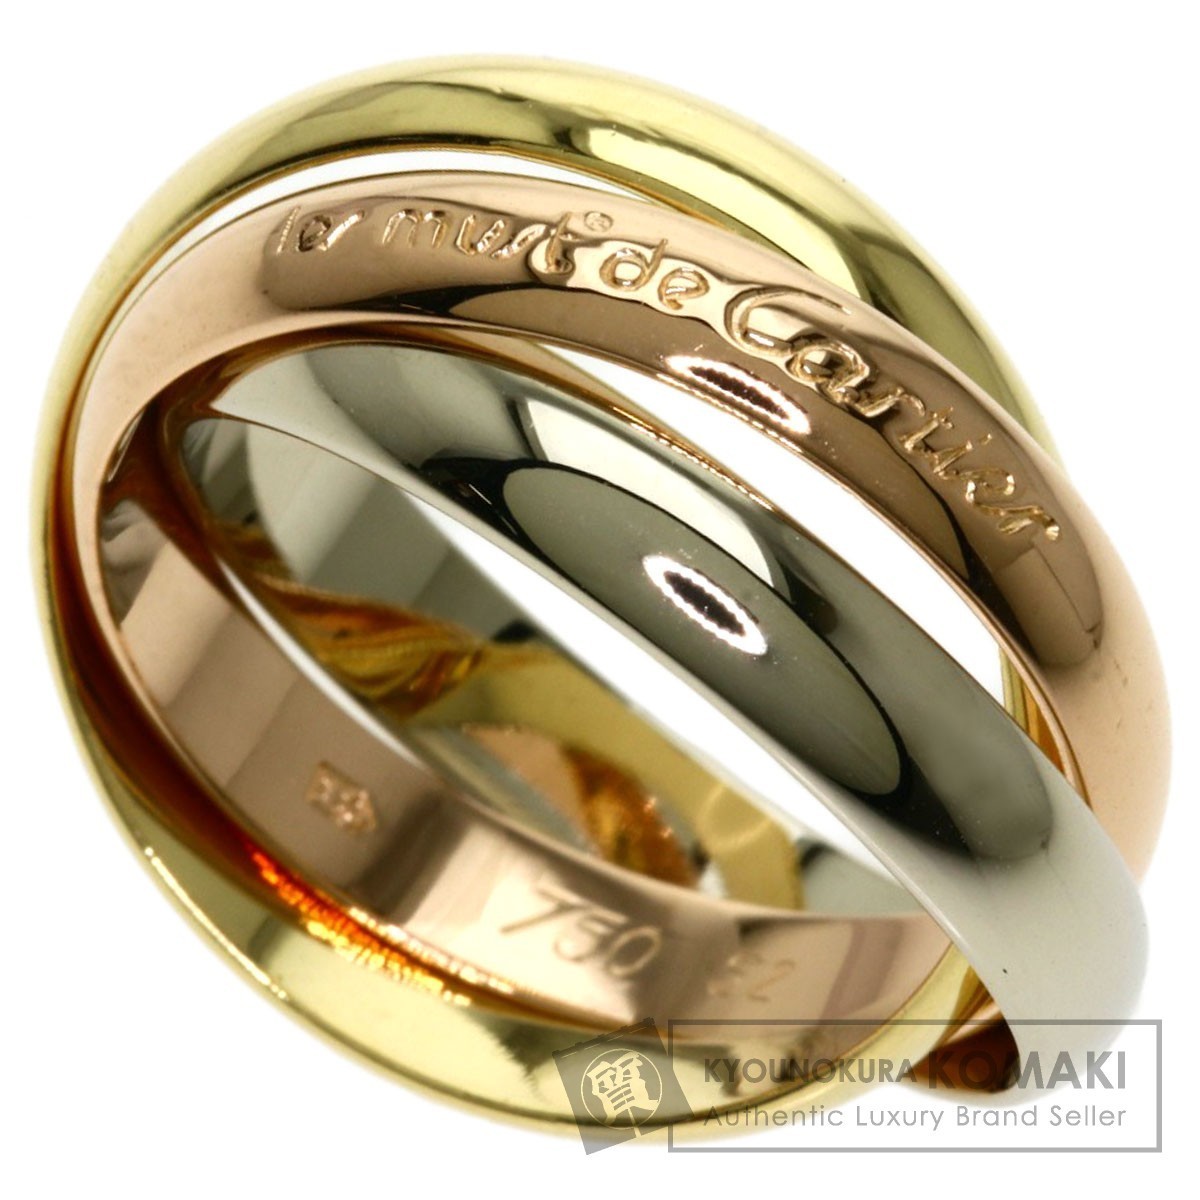 CARTIER カルティエ トリニティ #52 リング 特価キャンペーン K18イエローゴールド レディース 中古 指輪 定番スタイル